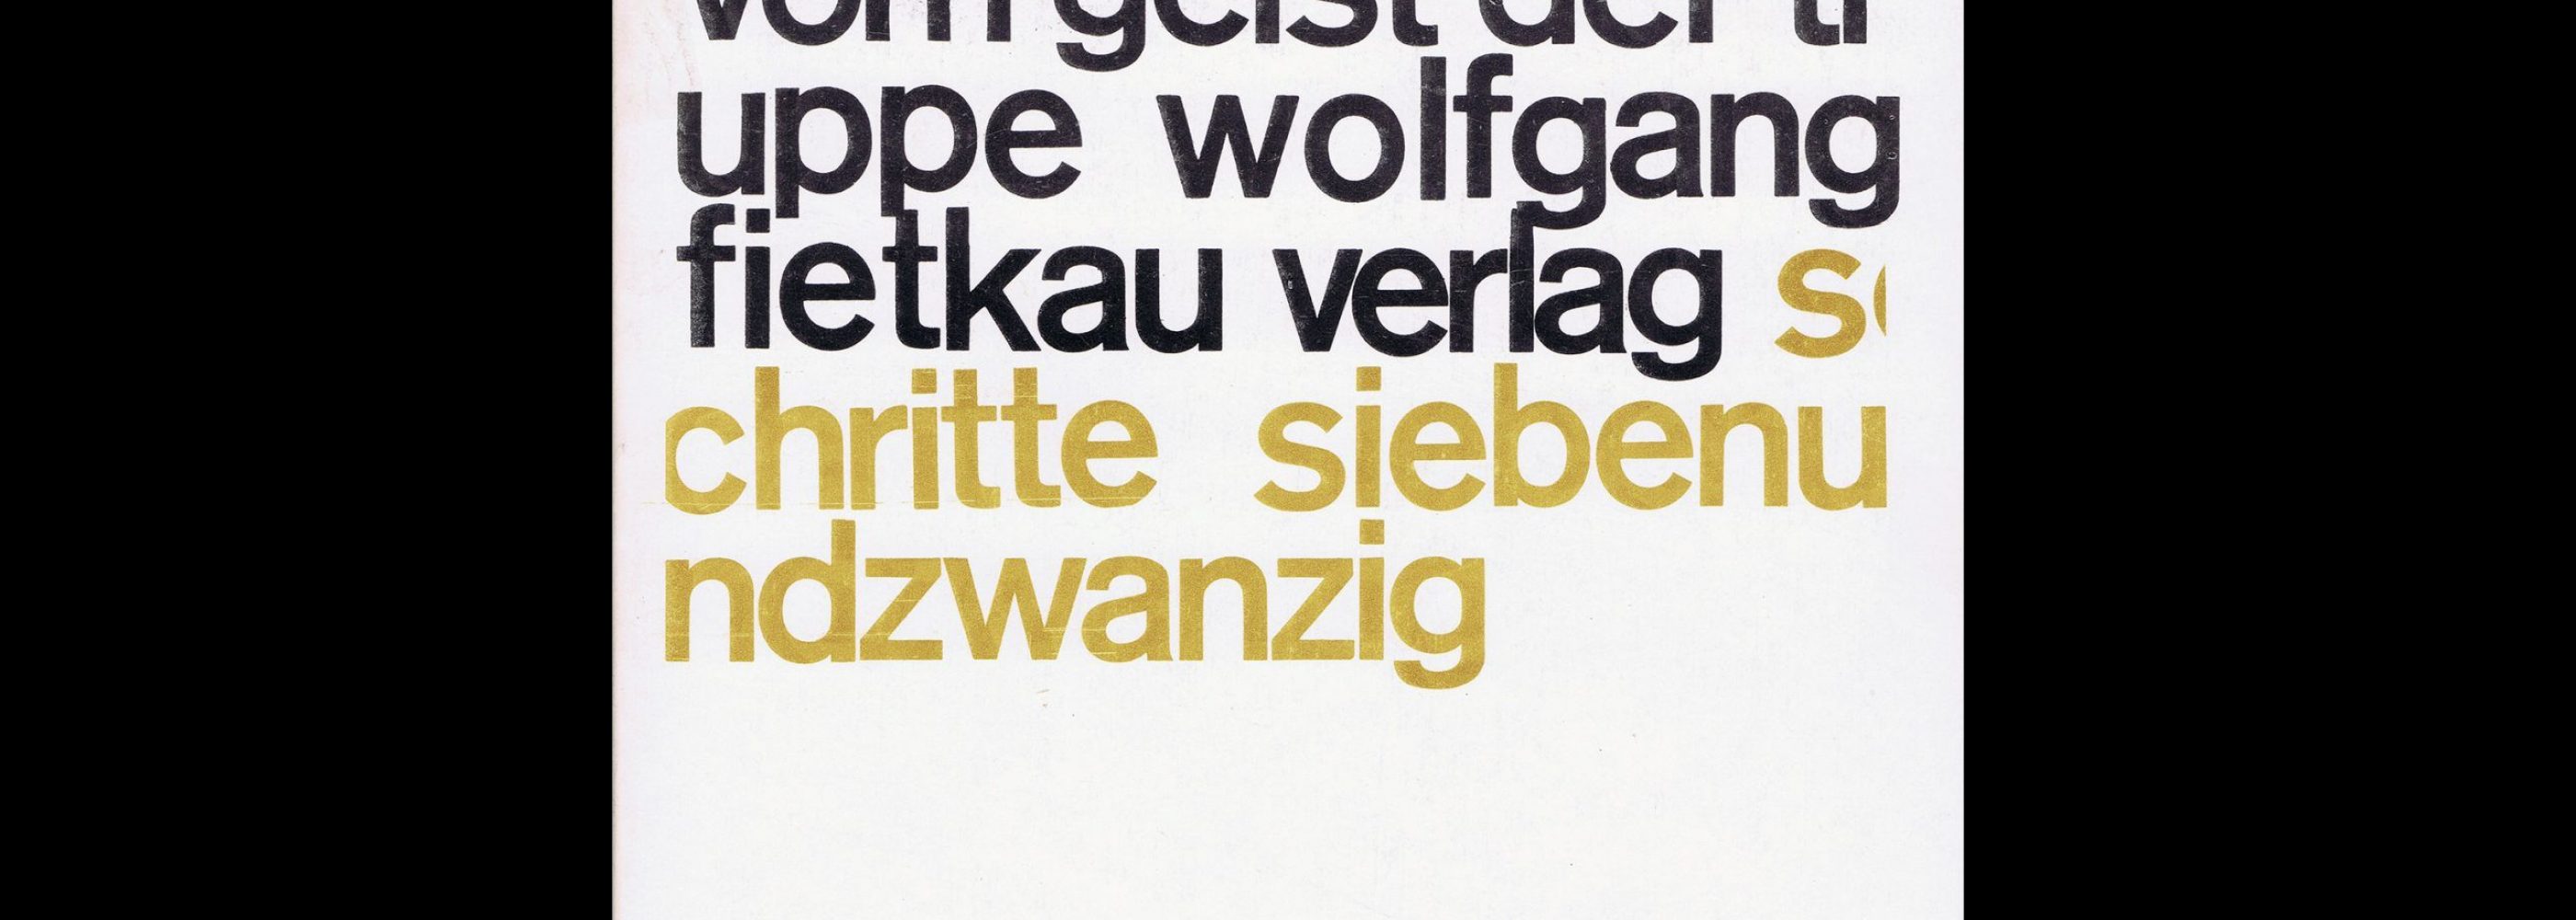 Walter Gerlach, Vom Geist der Truppe, Wolfgang Fietkau Verlag, 1974. Designed by Christian Chruxin